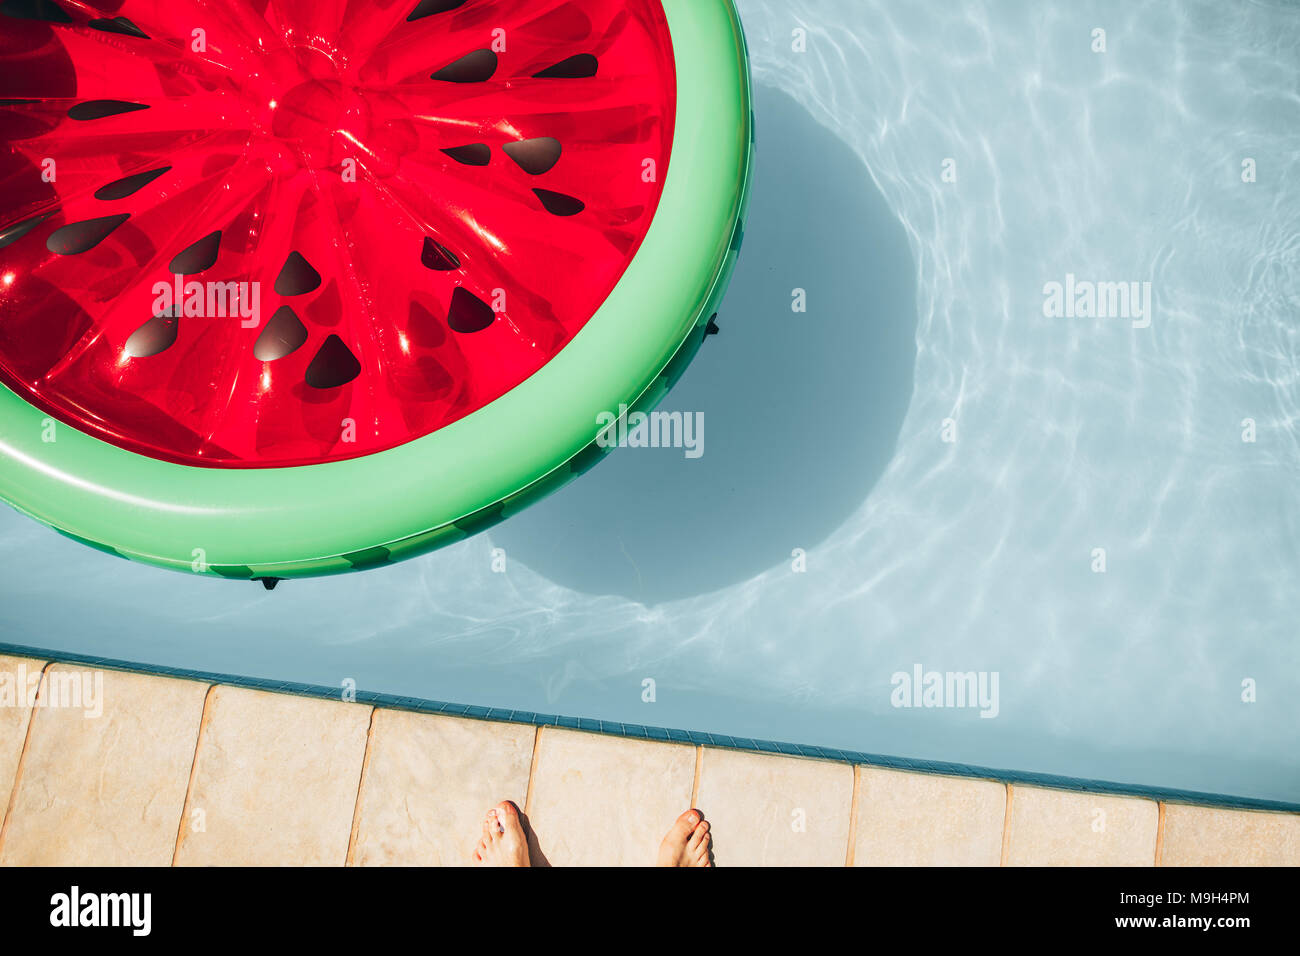 Vue de dessus de matelas gonflable coloré flottant de pastèque dans une piscine un jour d'été. Banque D'Images